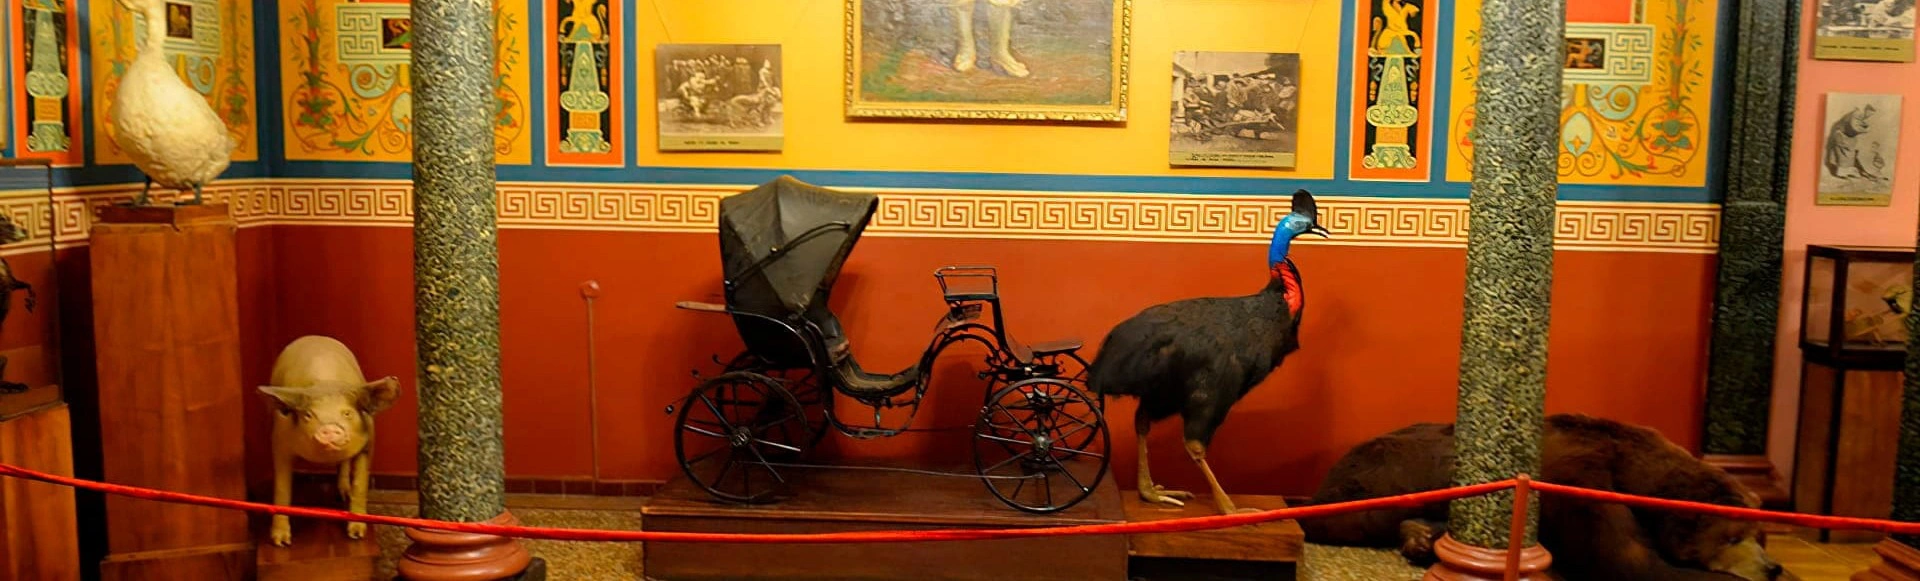 Экскурсия для малышей в музей «Уголок Дедушки Дурова»
